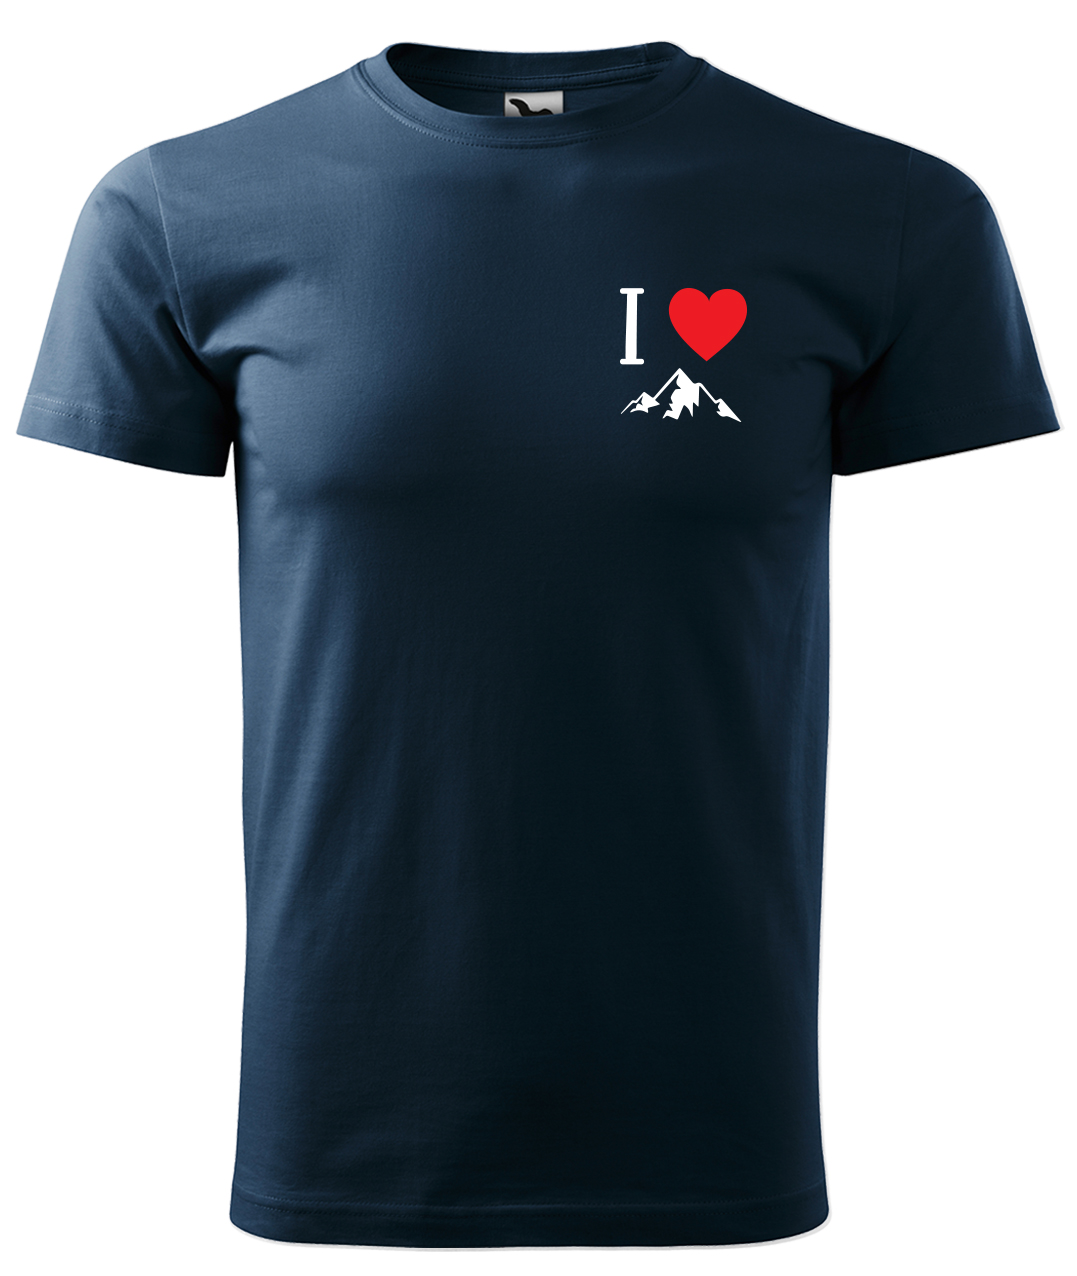 Dětské tričko na hory - I love mountain Velikost: 4 roky / 110 cm, Barva: Námořní modrá (02), Délka rukávu: Krátký rukáv